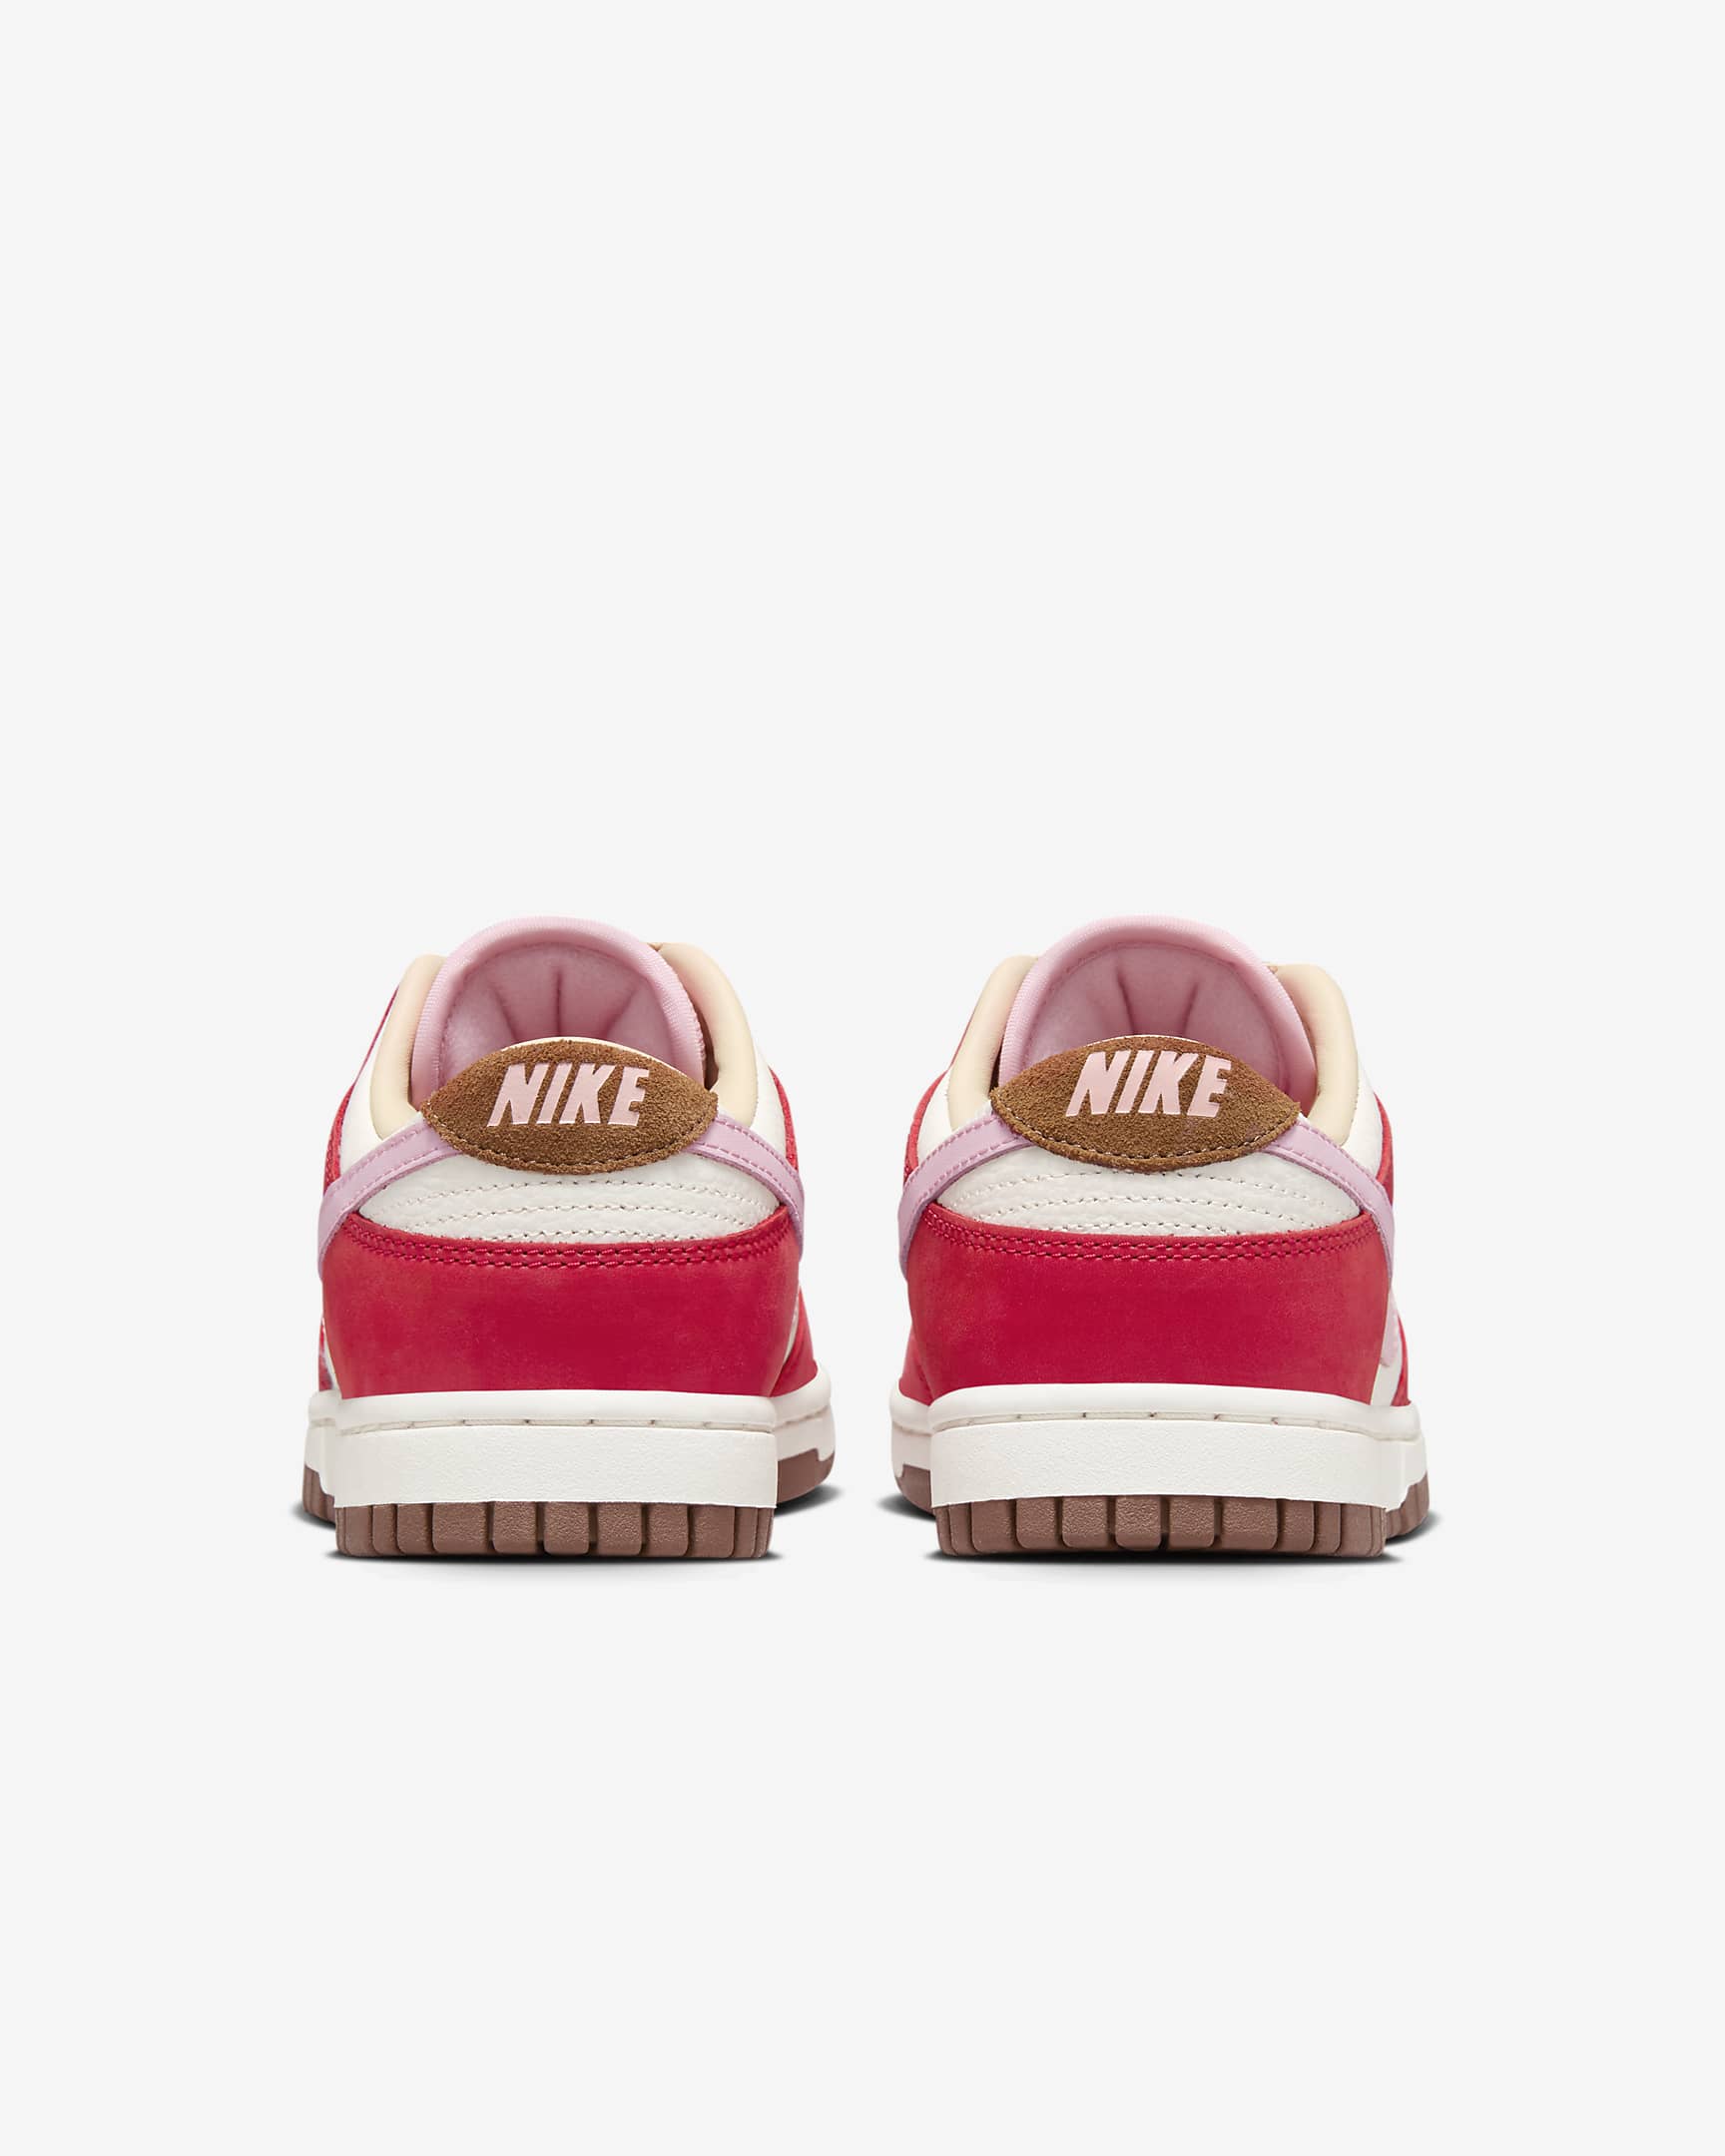 Nike Dunk Low Premium Women's Shoes